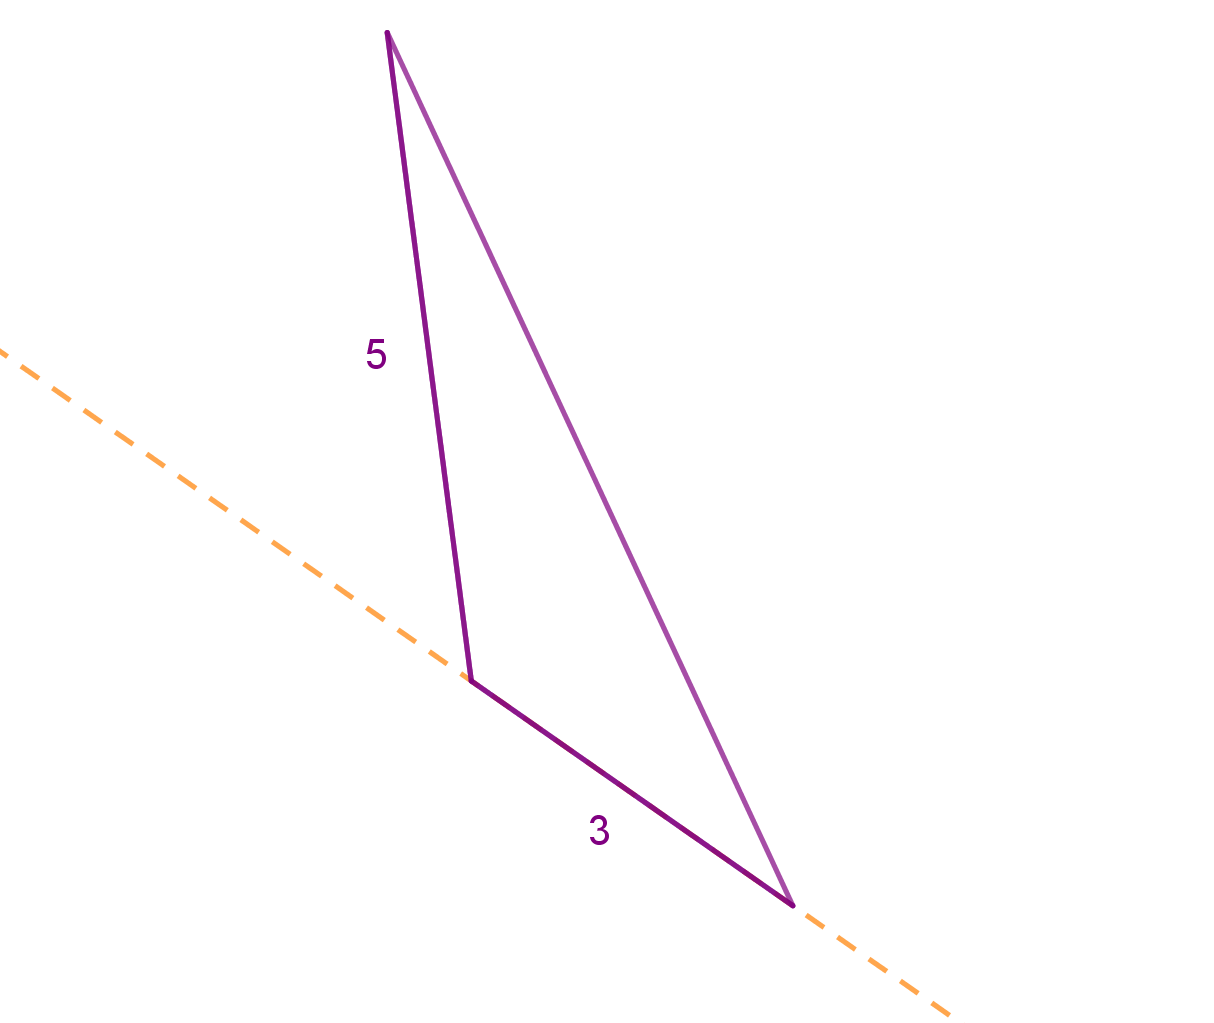 Tupokutni trokut rotira oko svoje najkraće stranice.